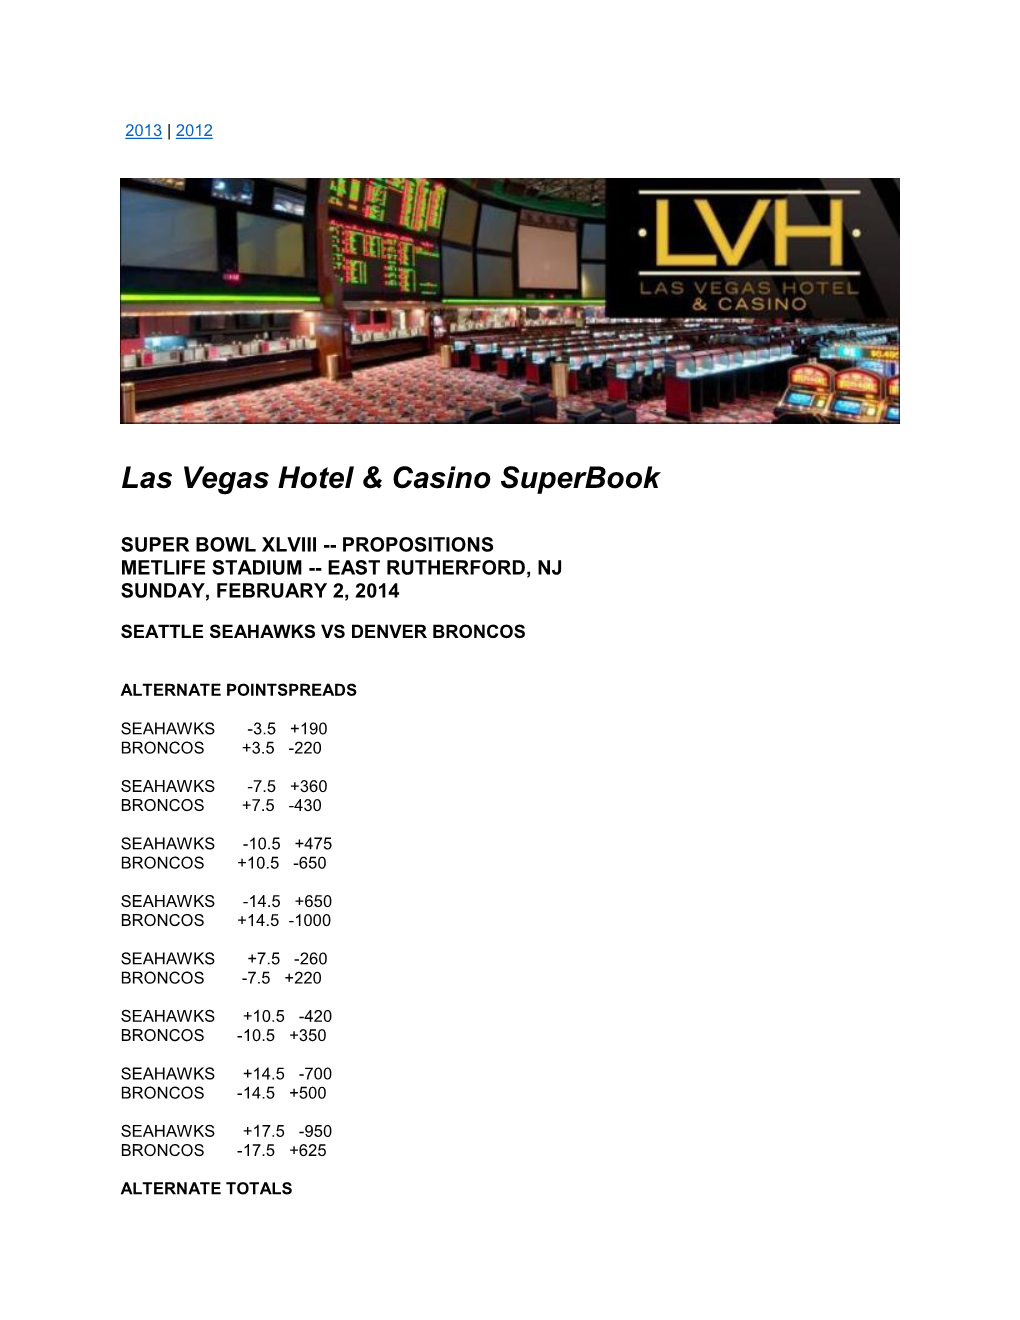 Las Vegas Hotel & Casino Superbook